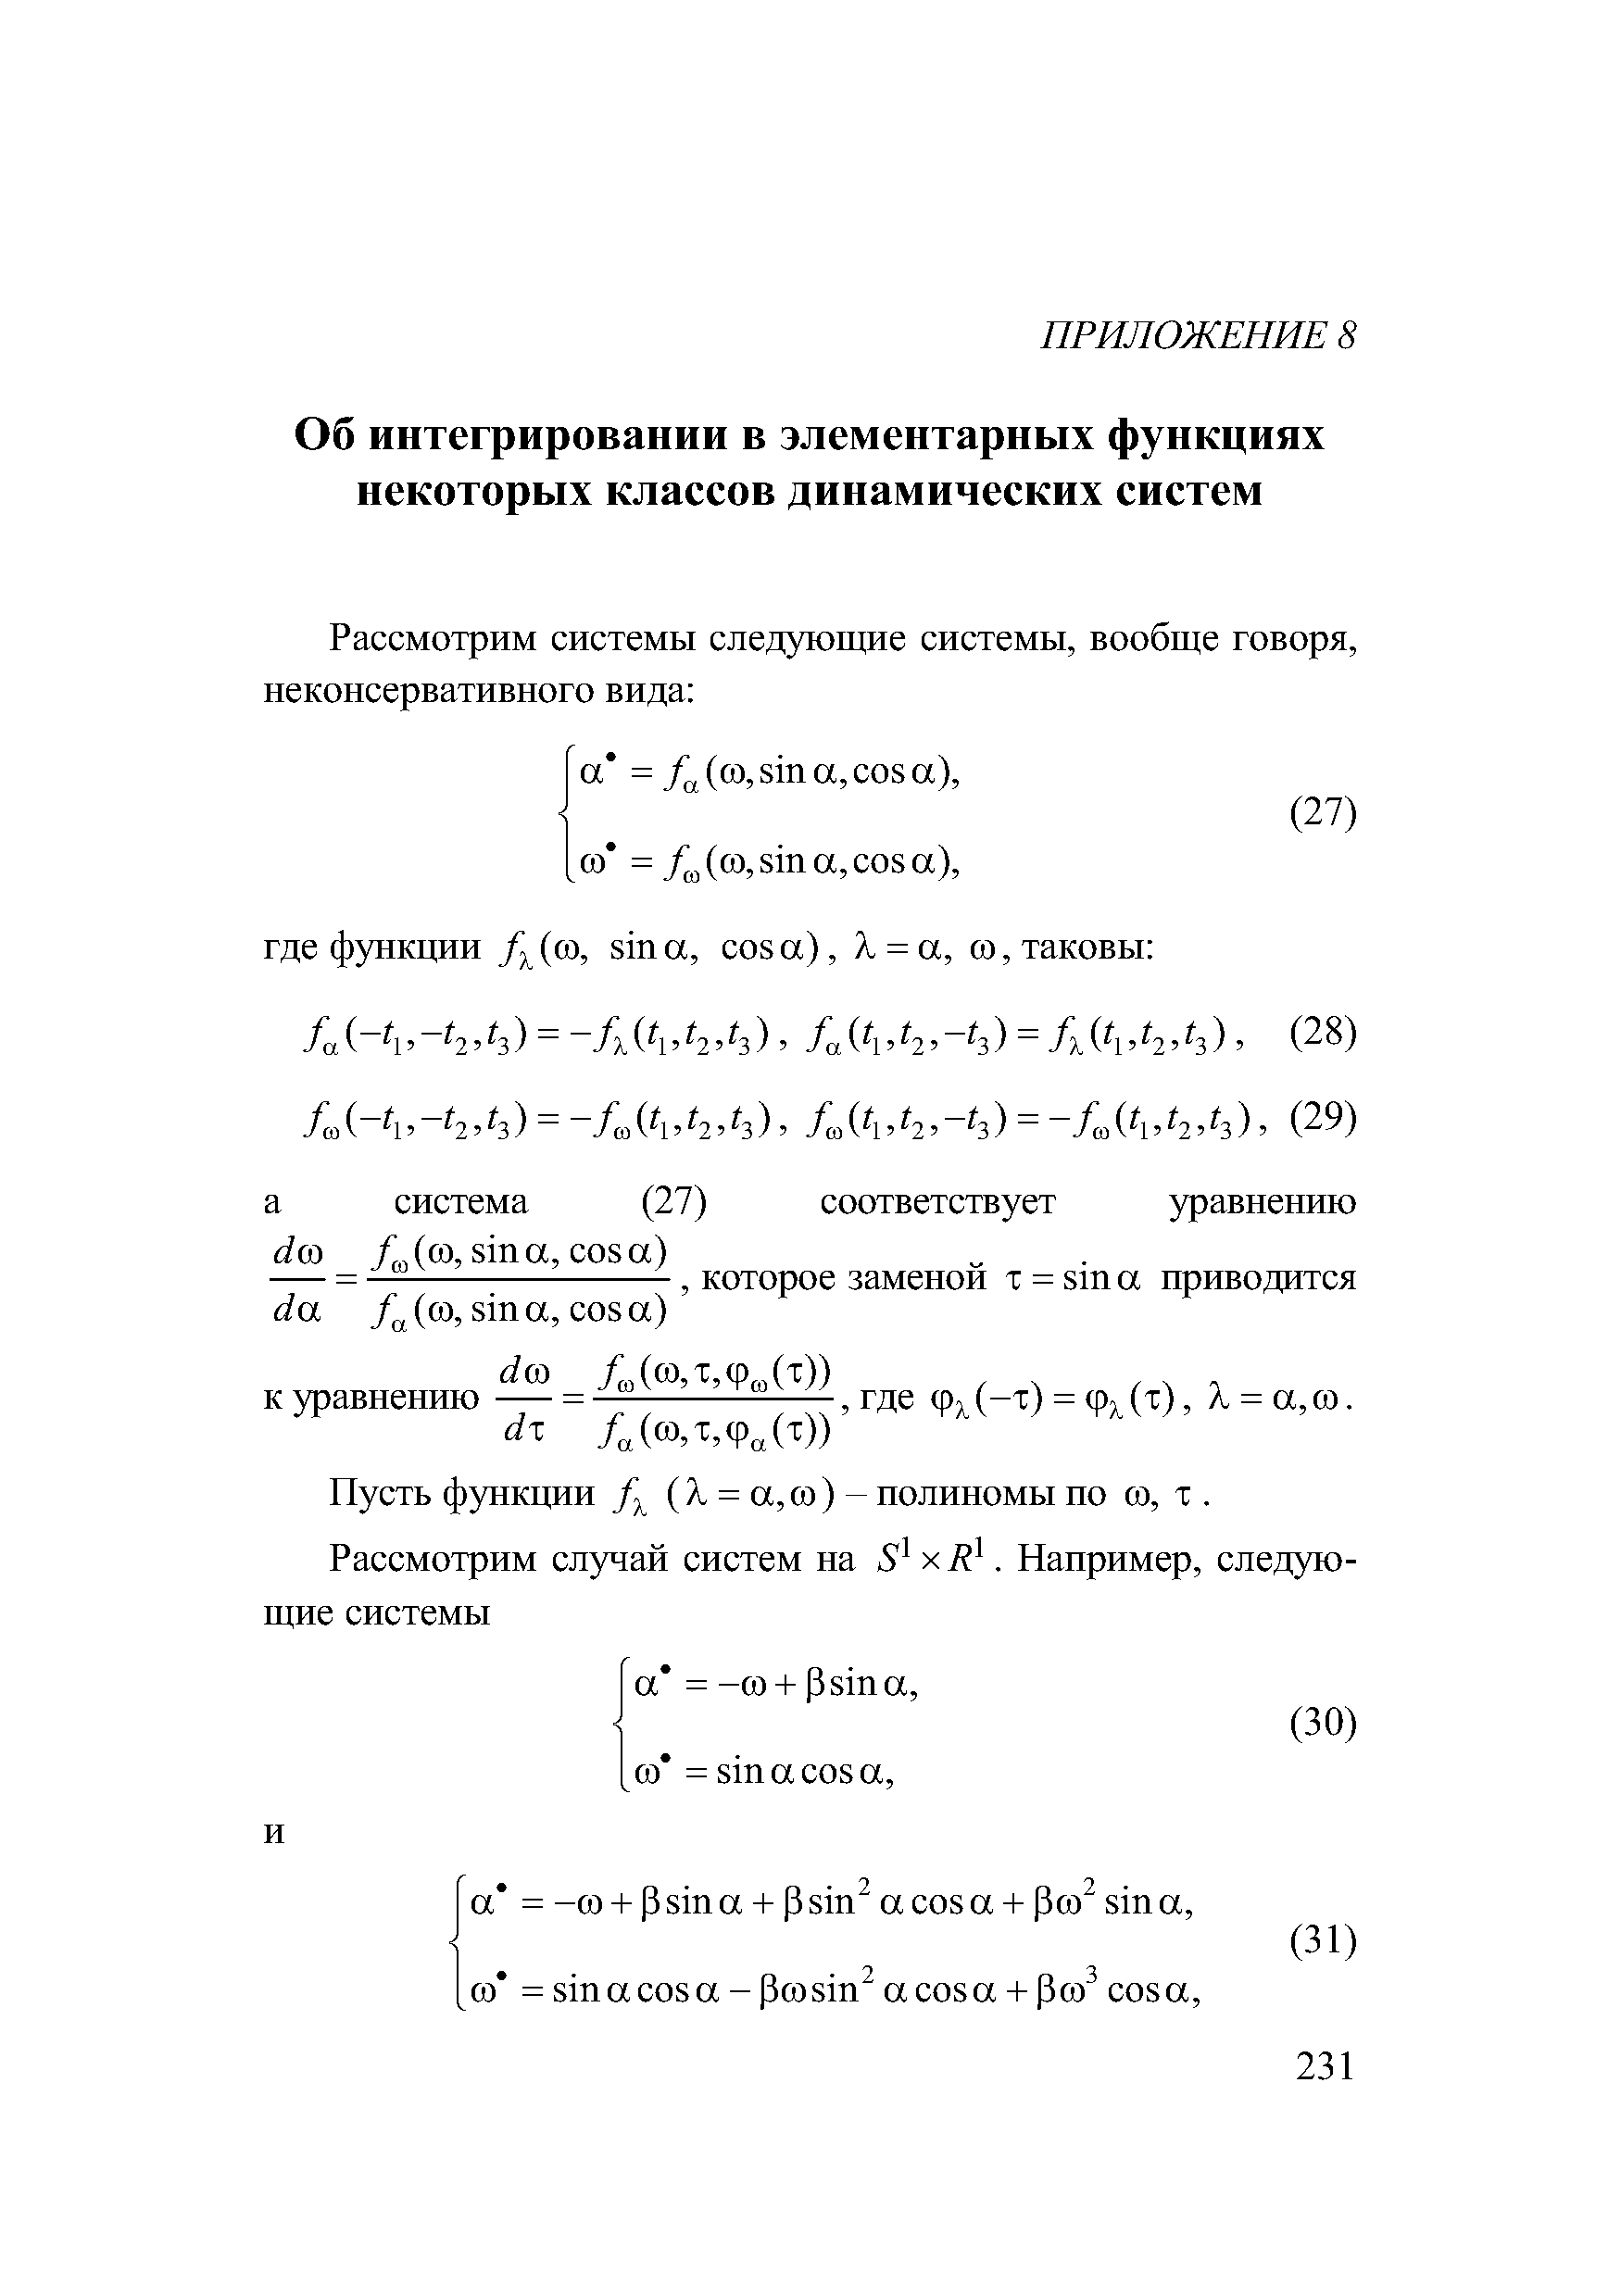 Пусть функции ( A = а, ю ) - полиномы по ю, т. 
